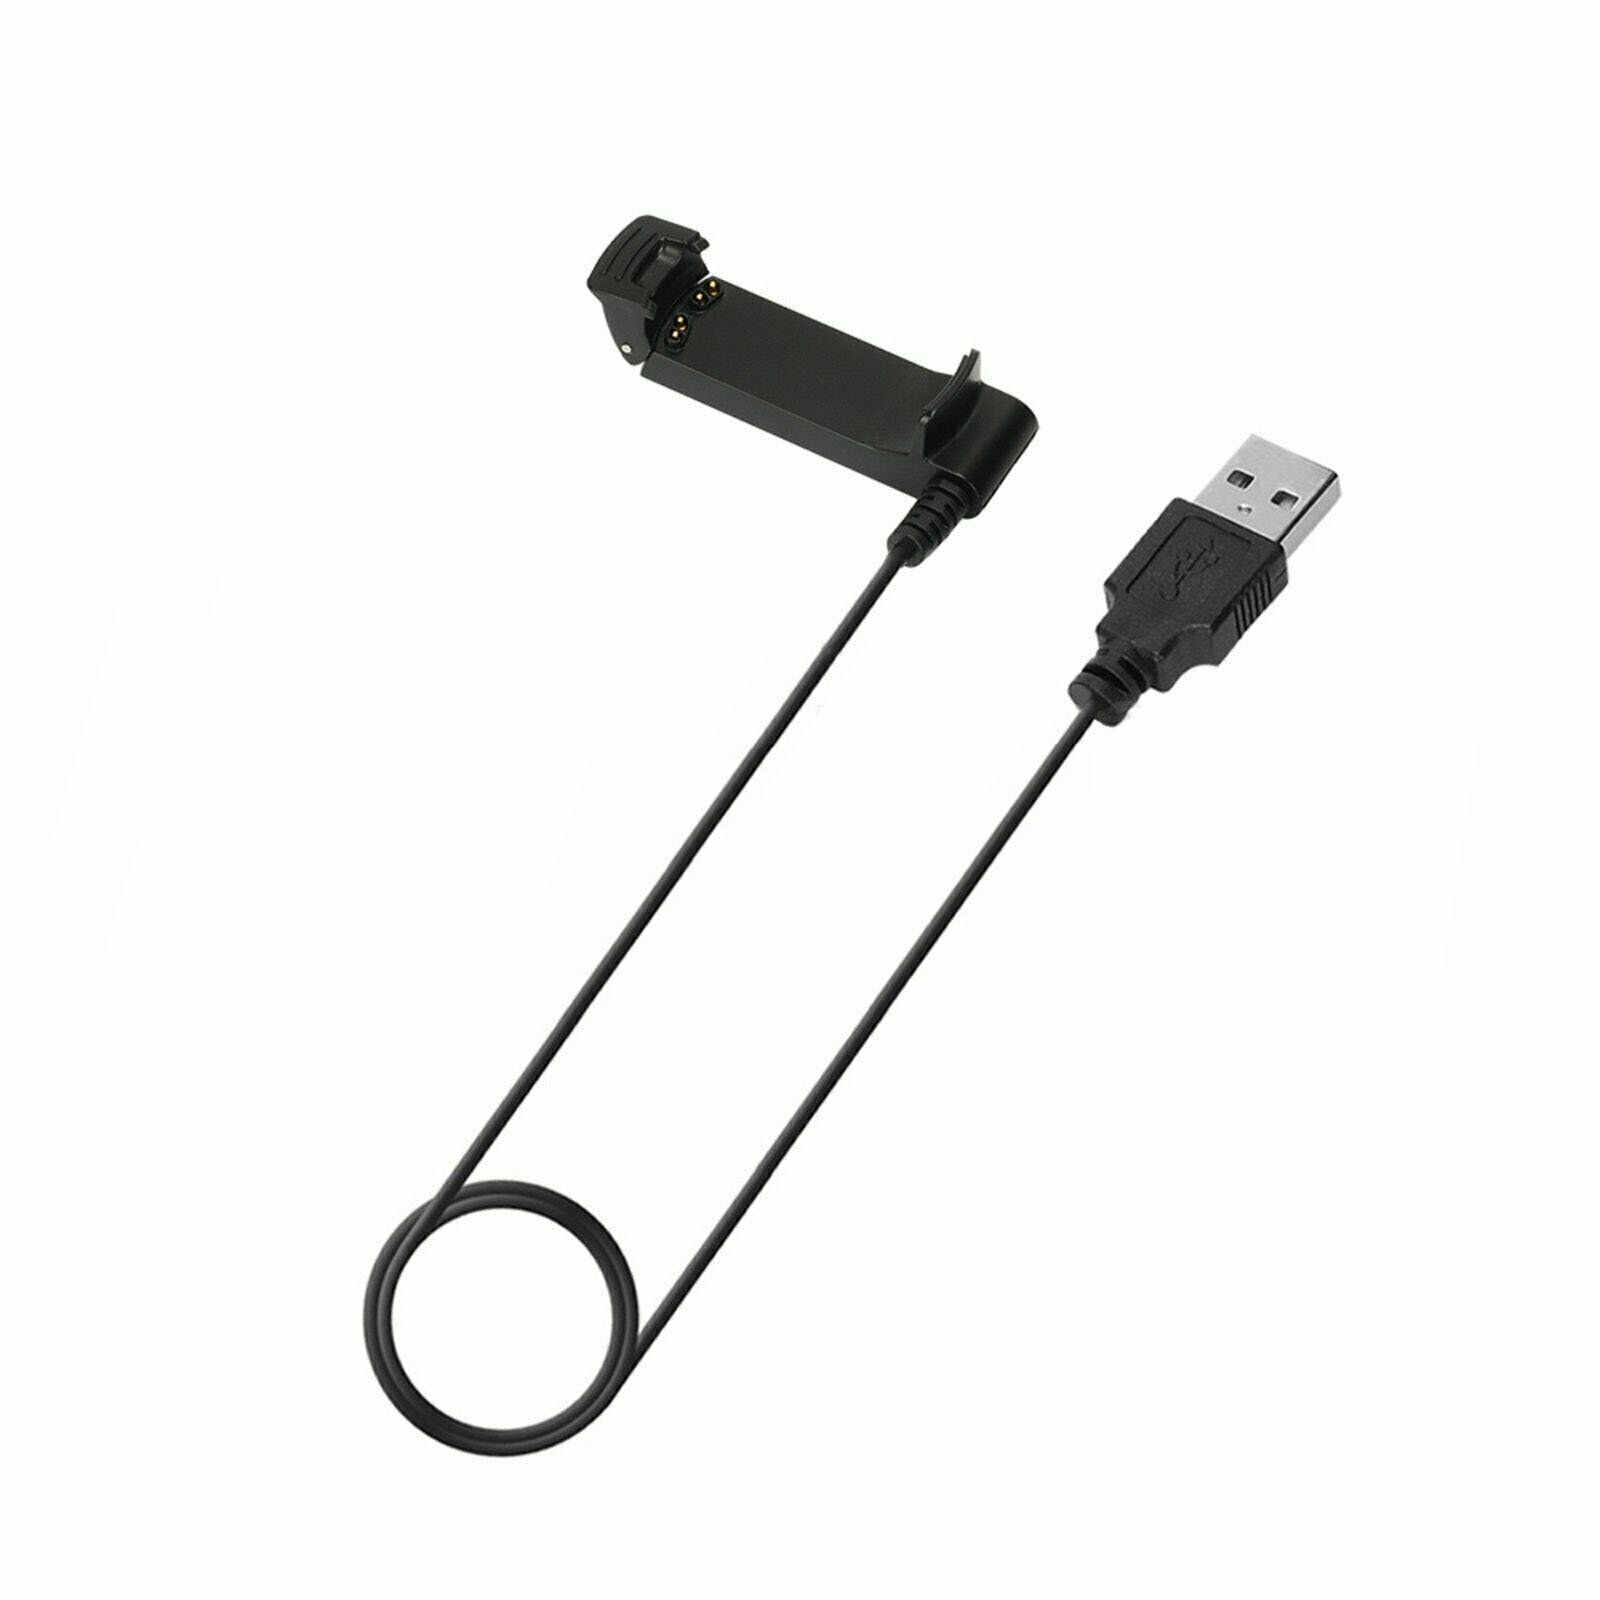 Dock Charger USB Charging Cable Cord For Garmin Fenix/2 Quatix Tactix D2 Parts